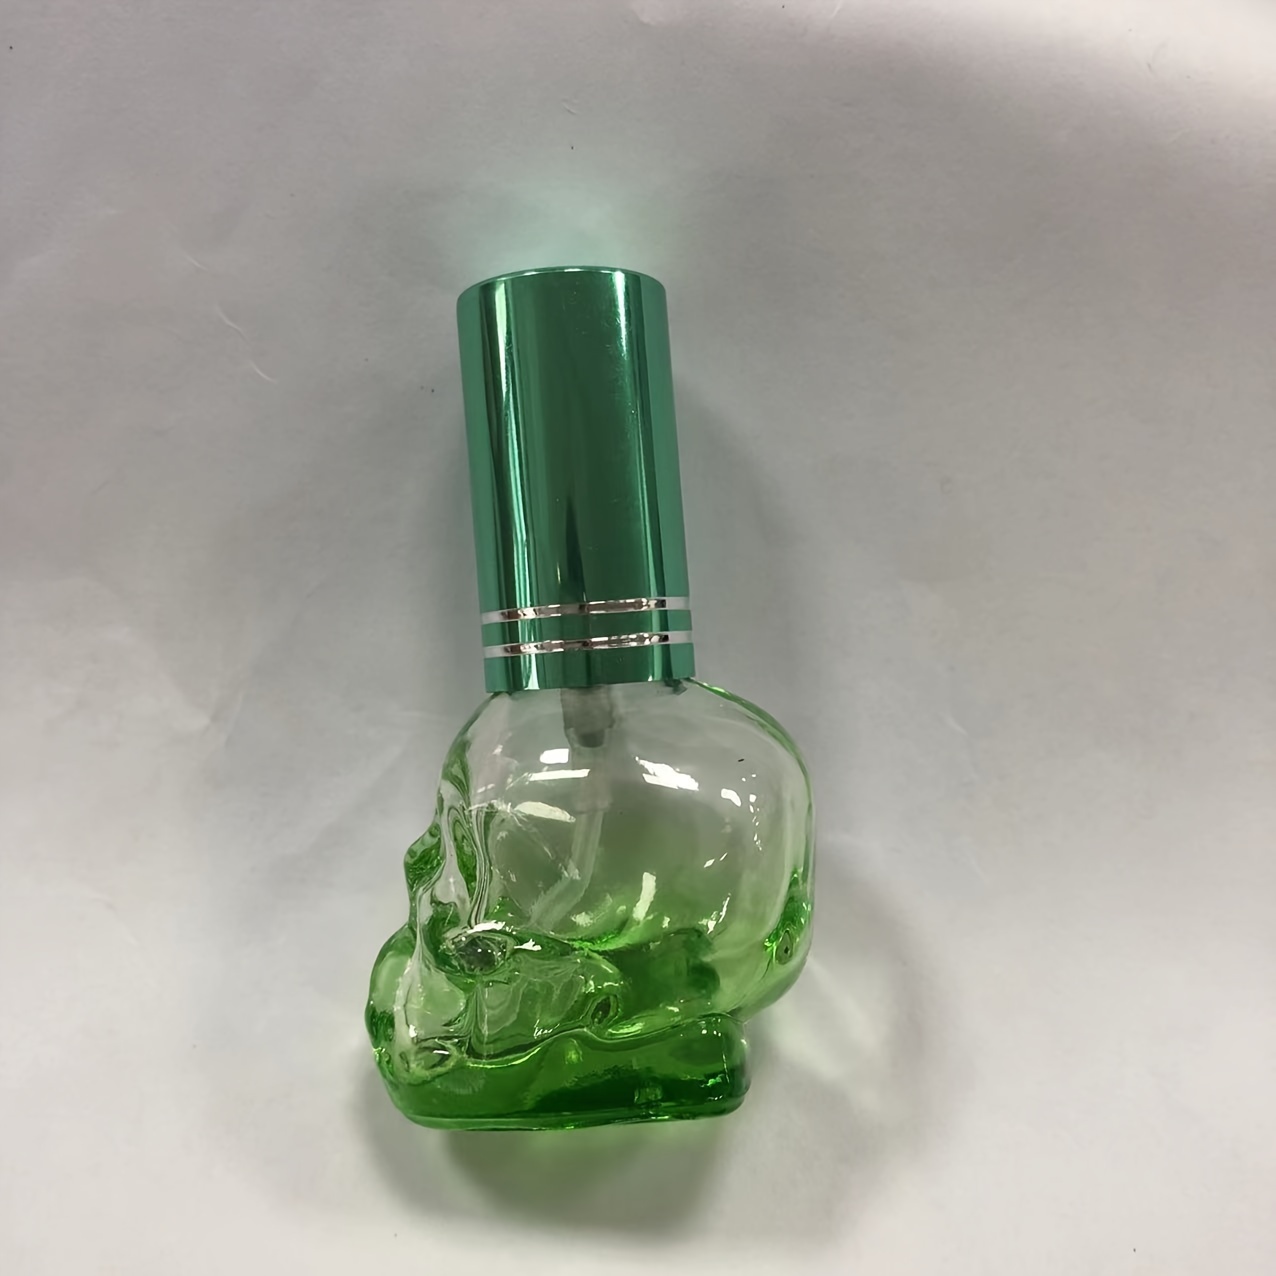 Refillable Travel Perfume Bottle, Skull Stainless Steel Shell